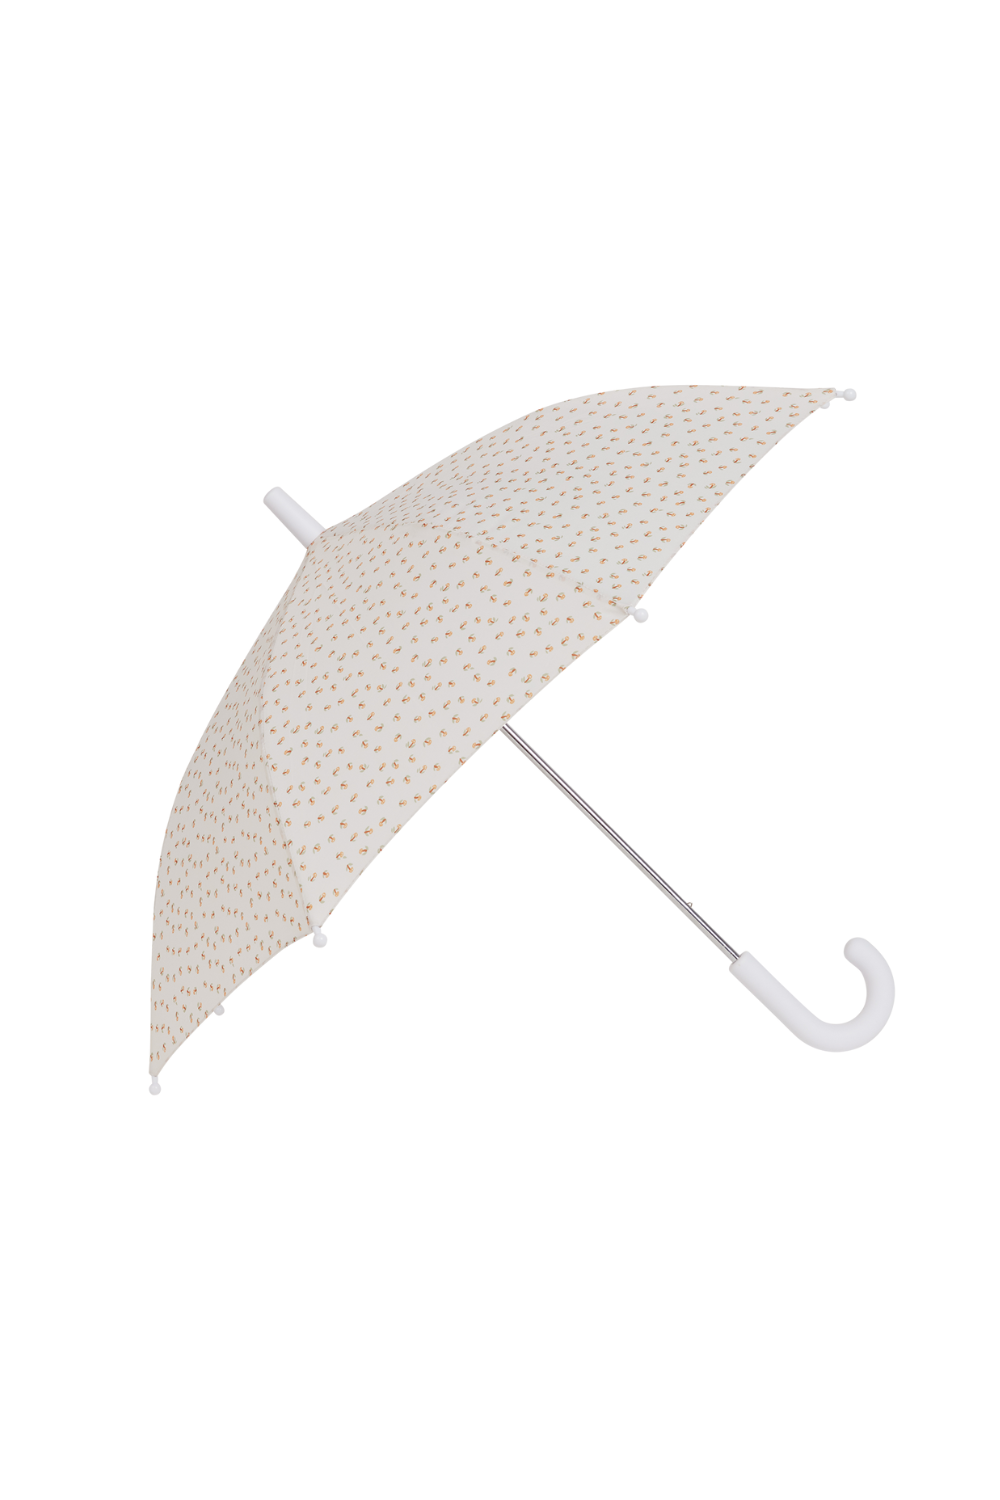 Olli Ella See-Ya Umbrella Leafed Mushroom: Stylish Rain Protection